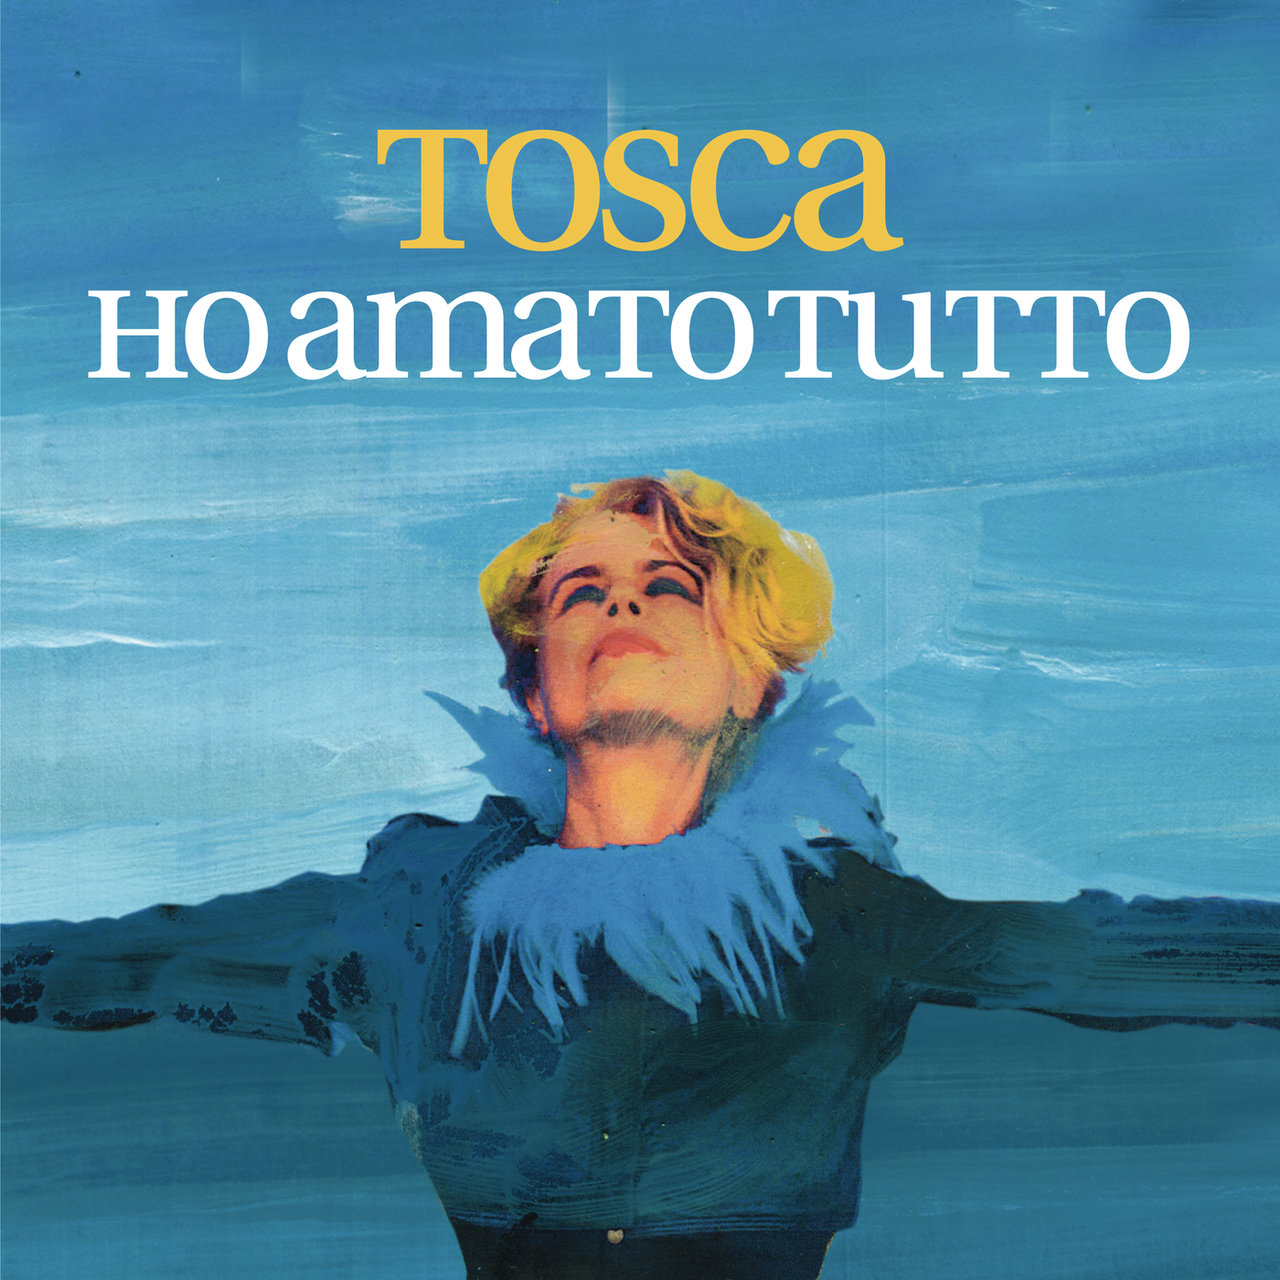 Tosca Ho amato tutto cover artwork